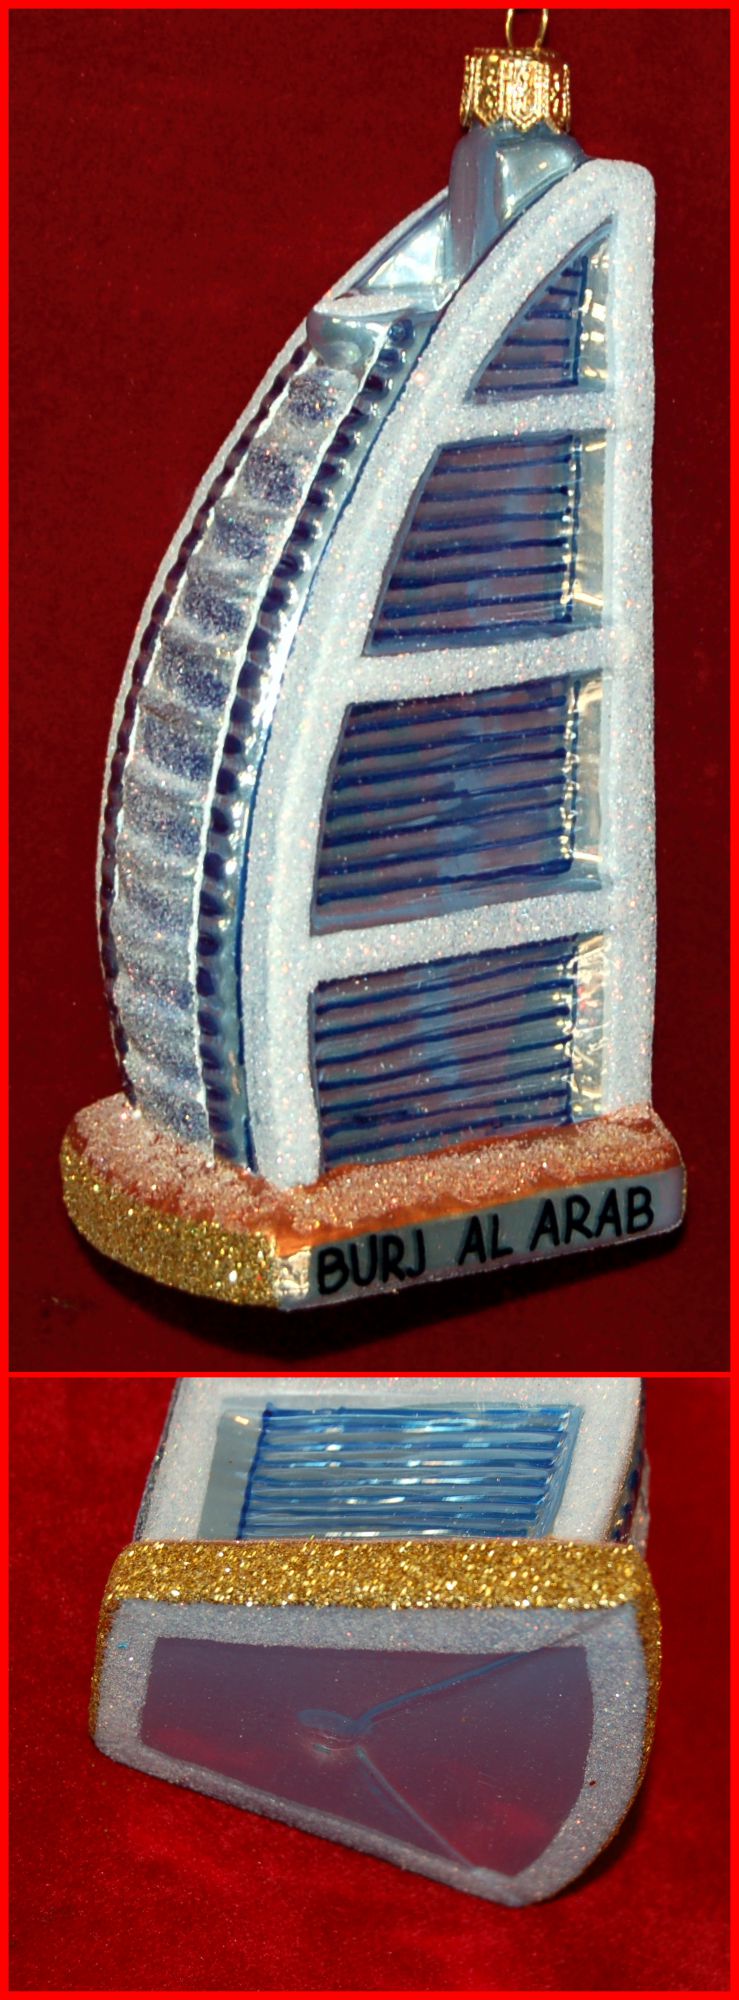 Burj Al Arab Christmas Ornament Polish Glass Personalized by RussellRhodes.com